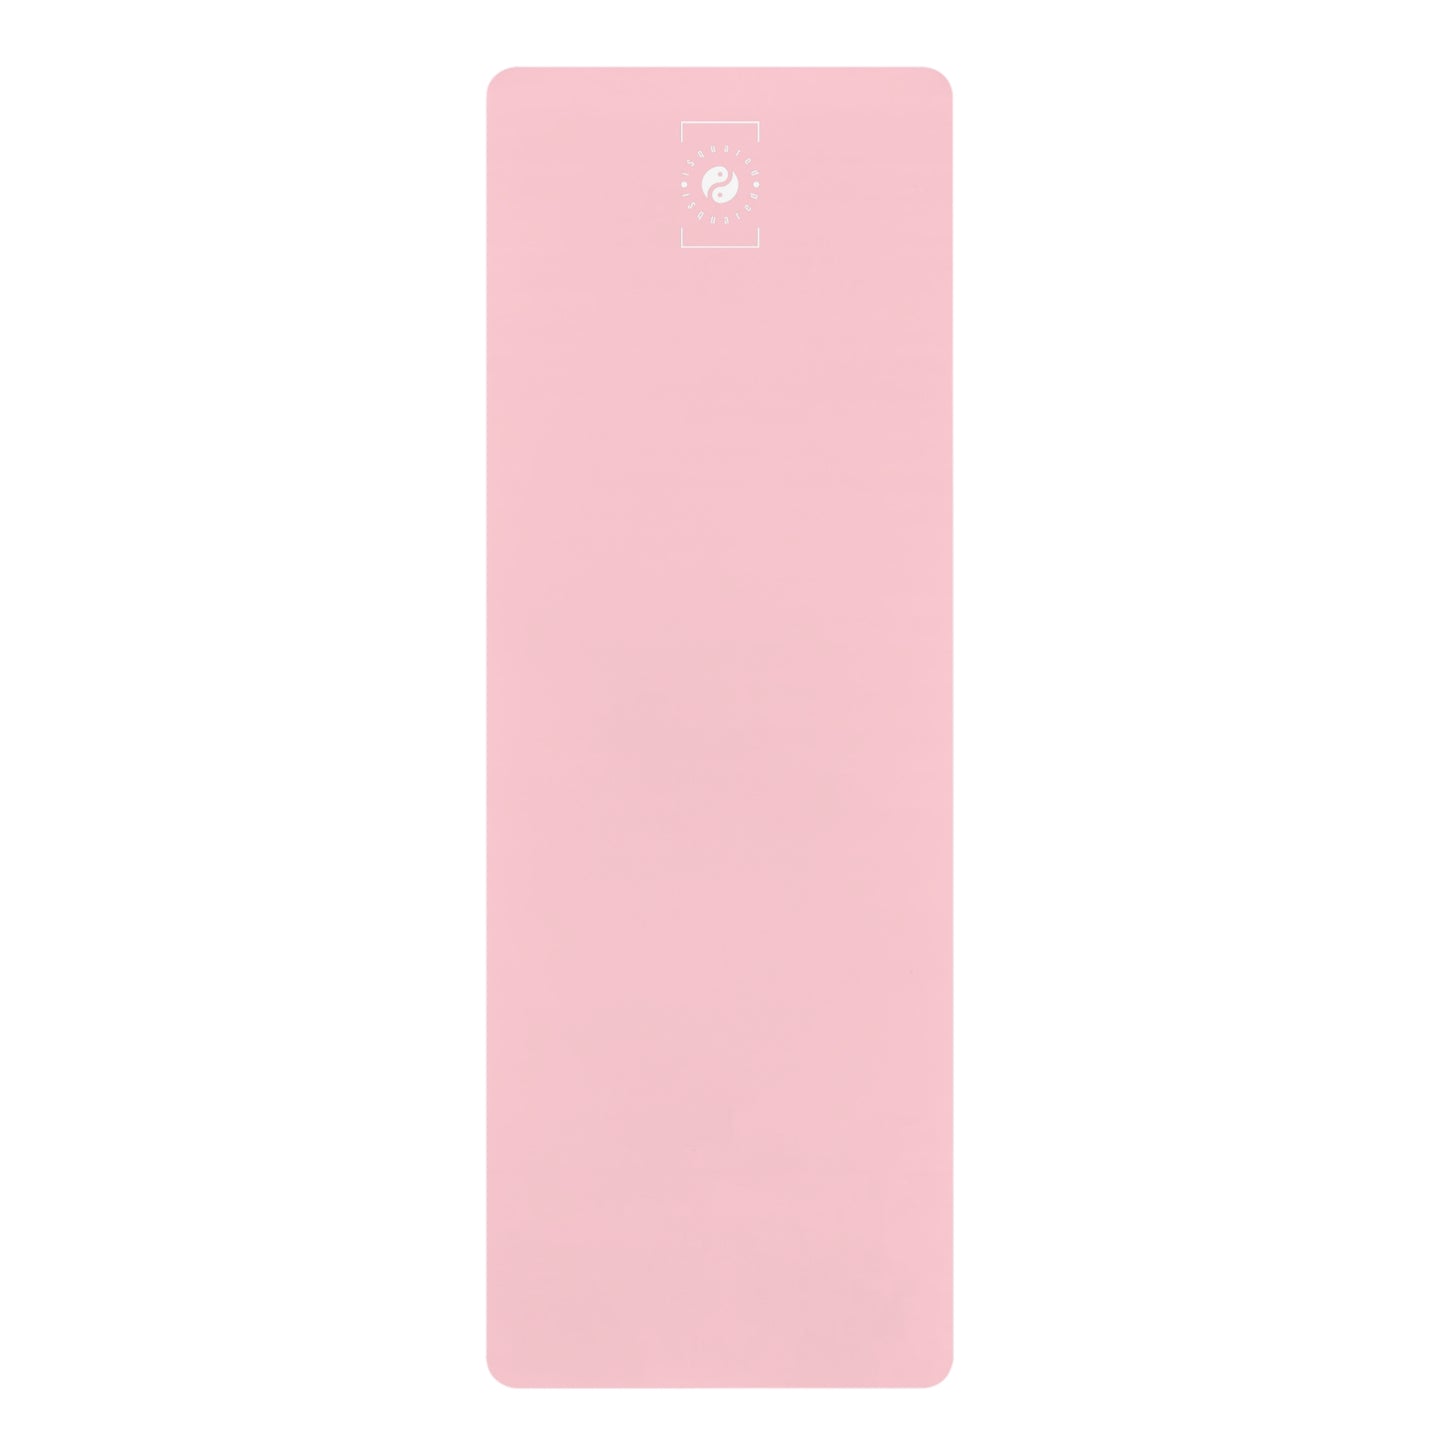 FFCCD4 Light Pink - Yoga Mat